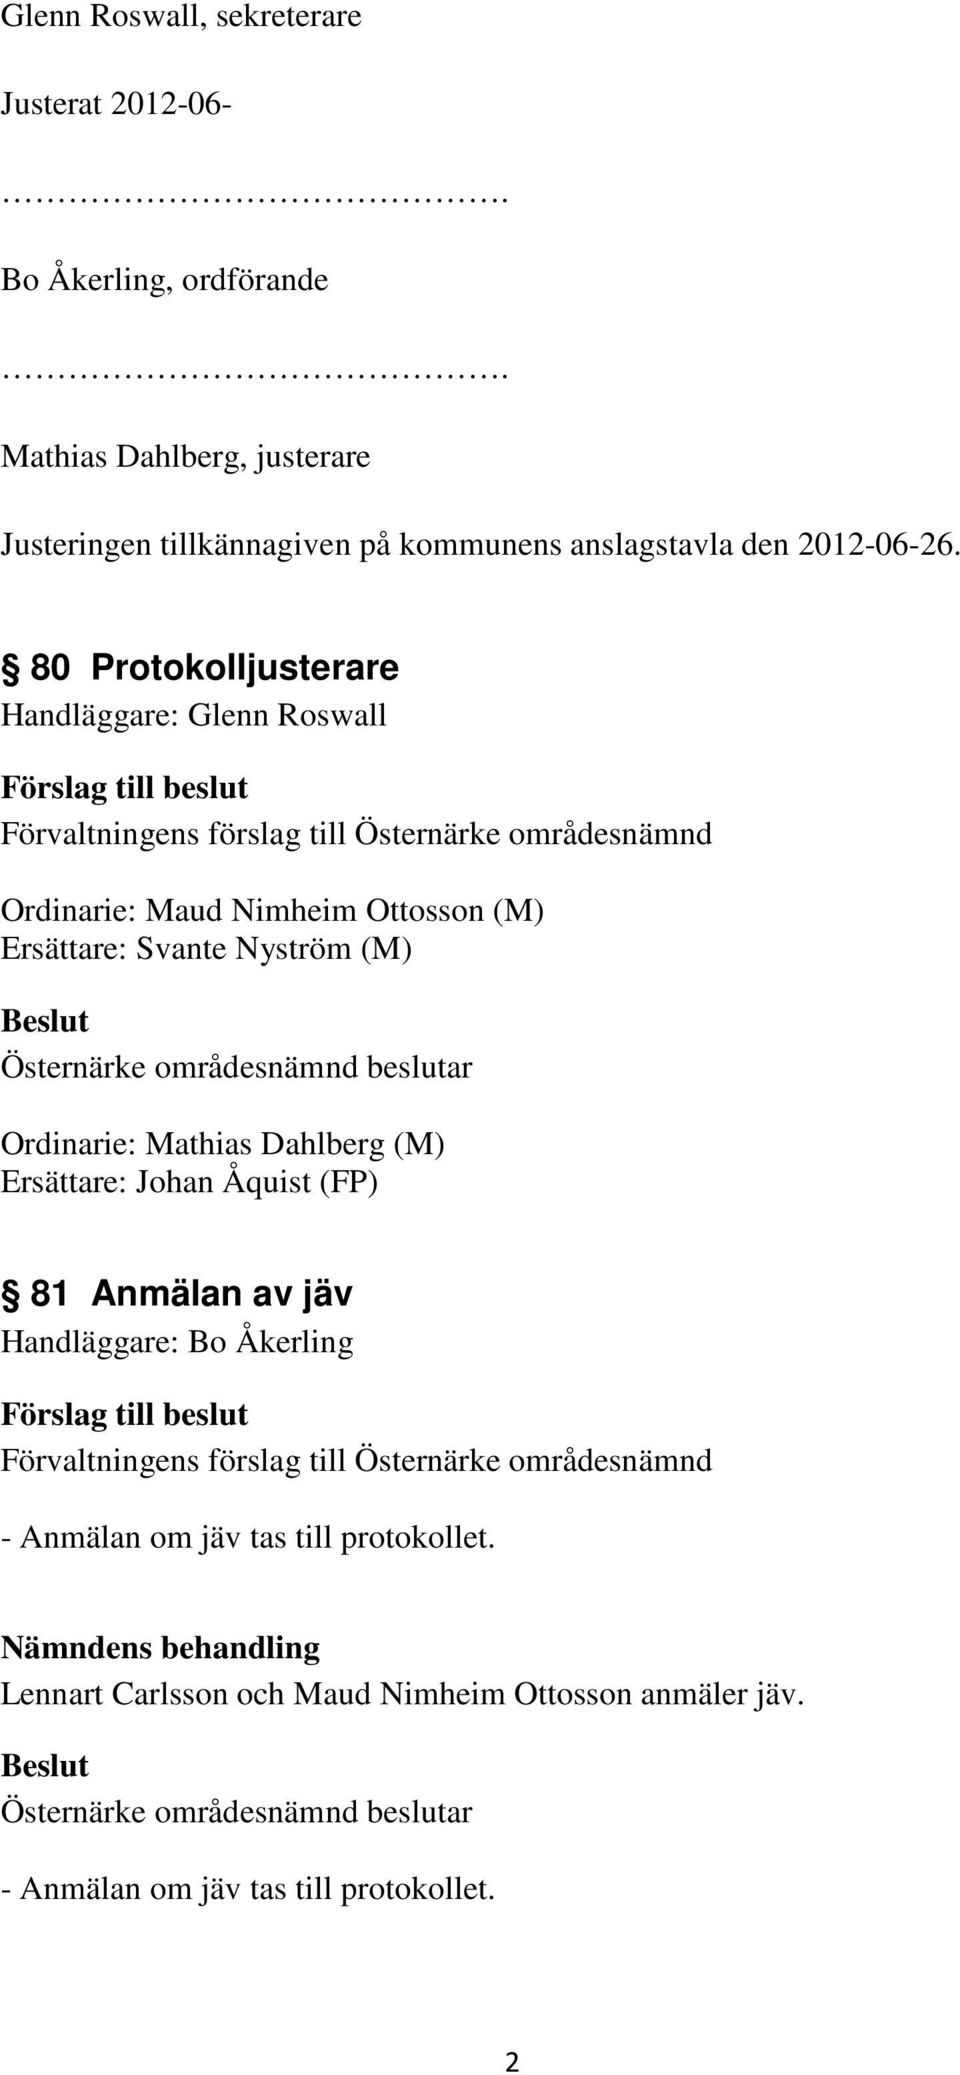 80 Protokolljusterare Handläggare: Glenn Roswall Ordinarie: Maud Nimheim Ottosson (M) Ersättare: Svante Nyström (M) Ordinarie: